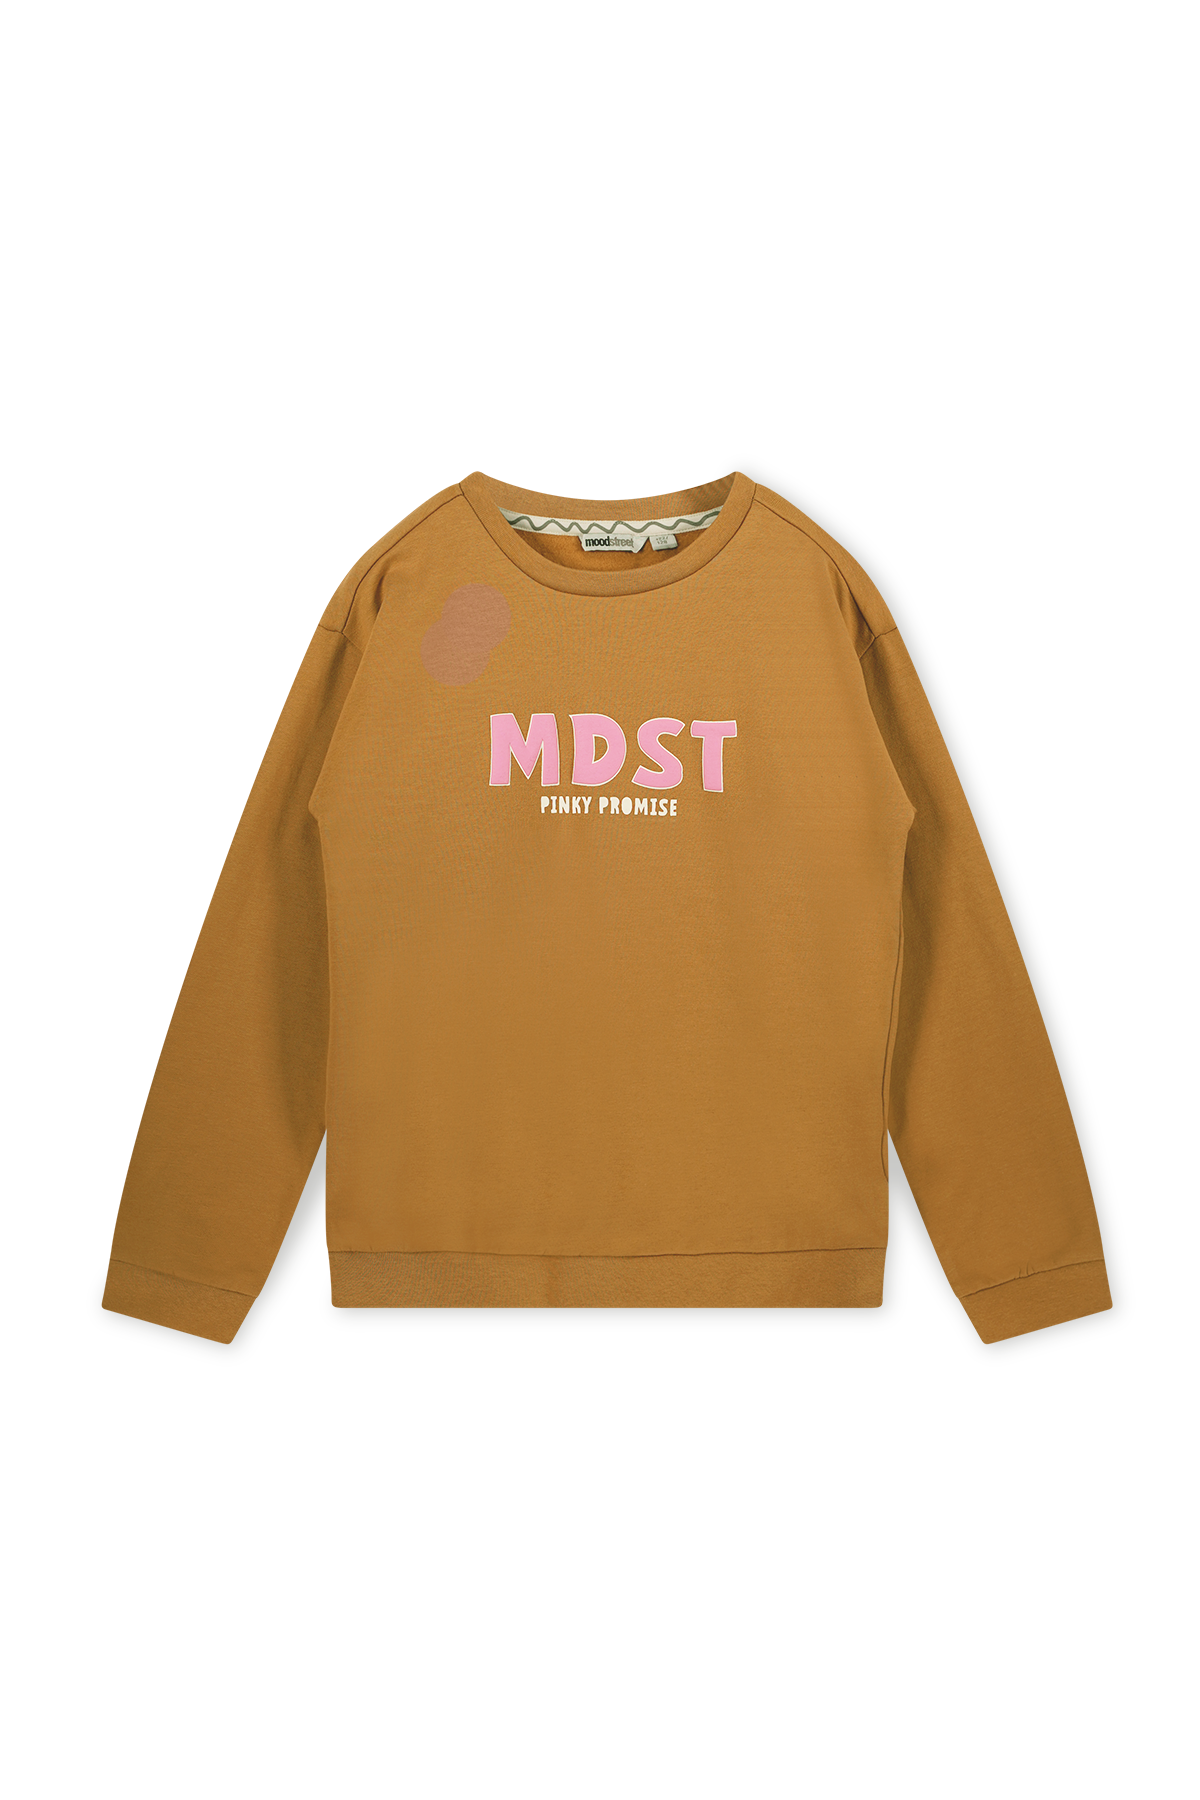 Trui / Sweater Camel sweater